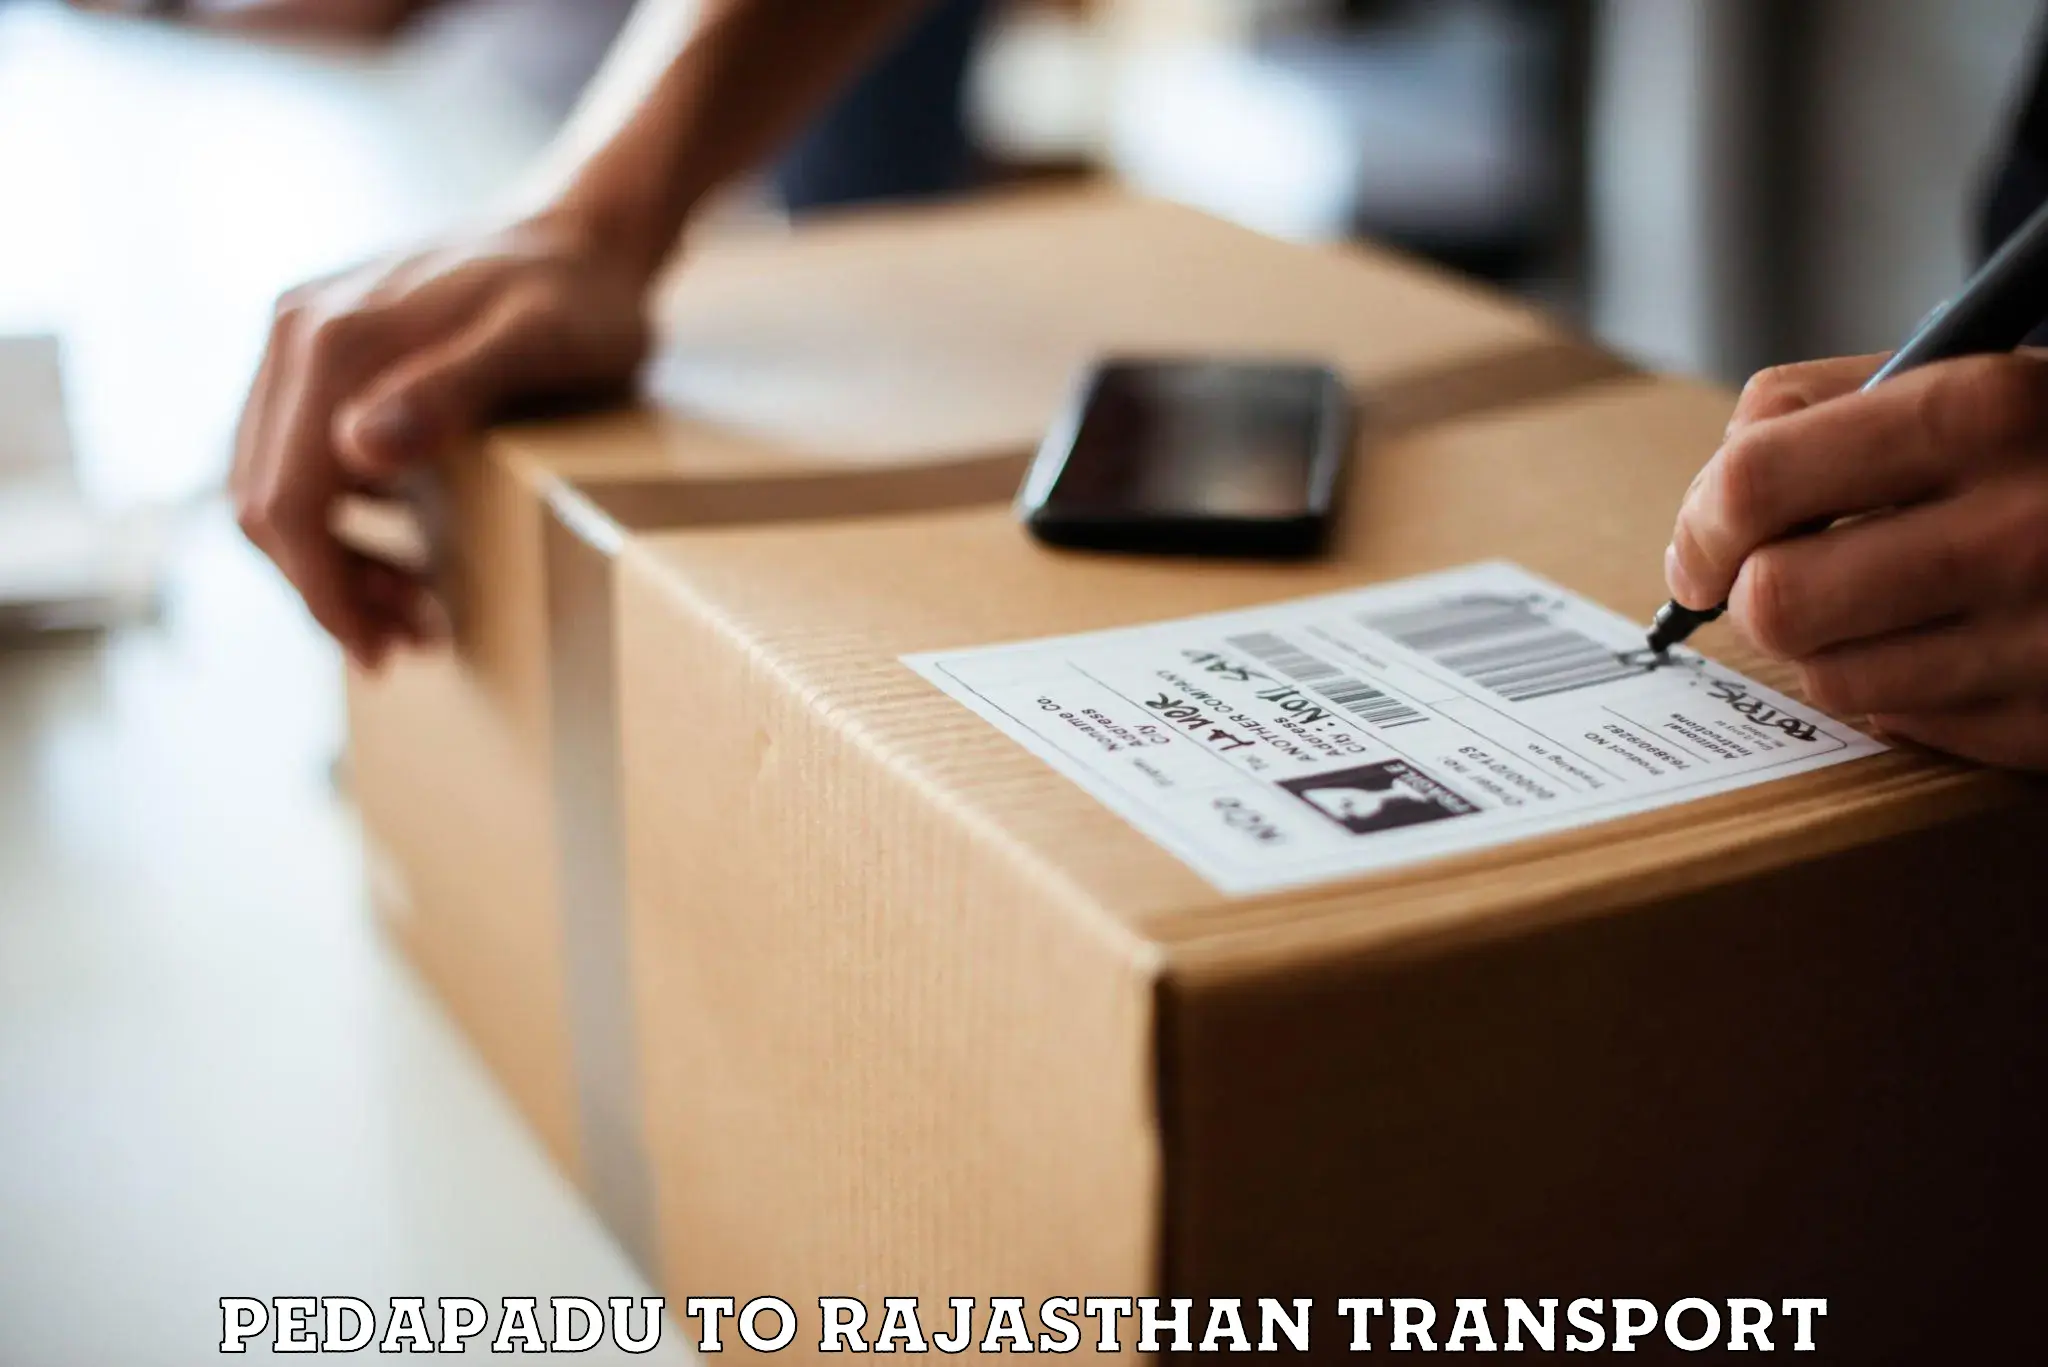 Daily parcel service transport Pedapadu to Nokha